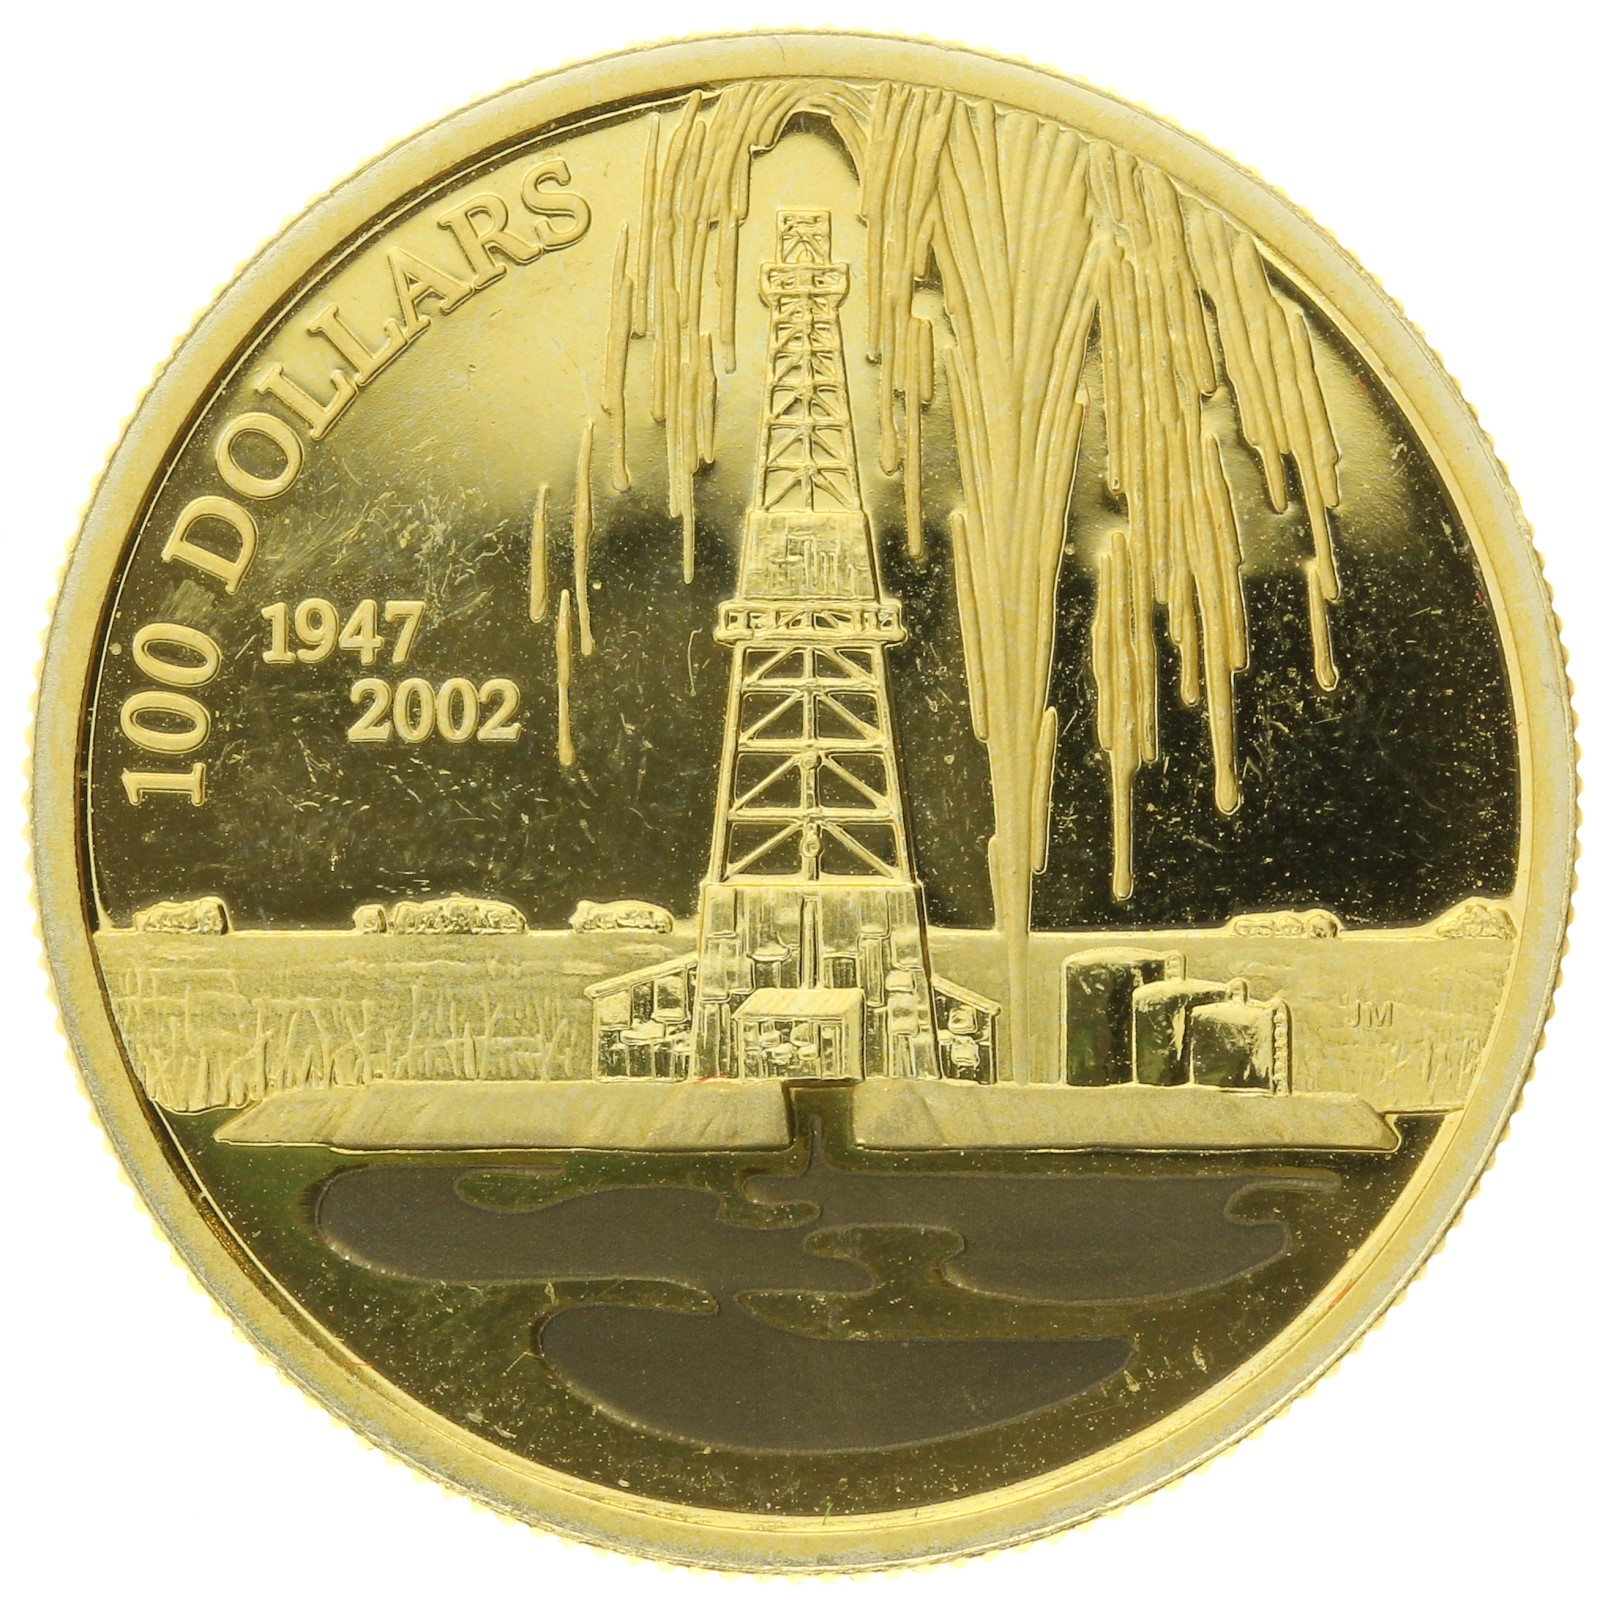 Canada - 100 Dollars - 2002 - Elizabeth II - Leduc Oil - 1/4oz